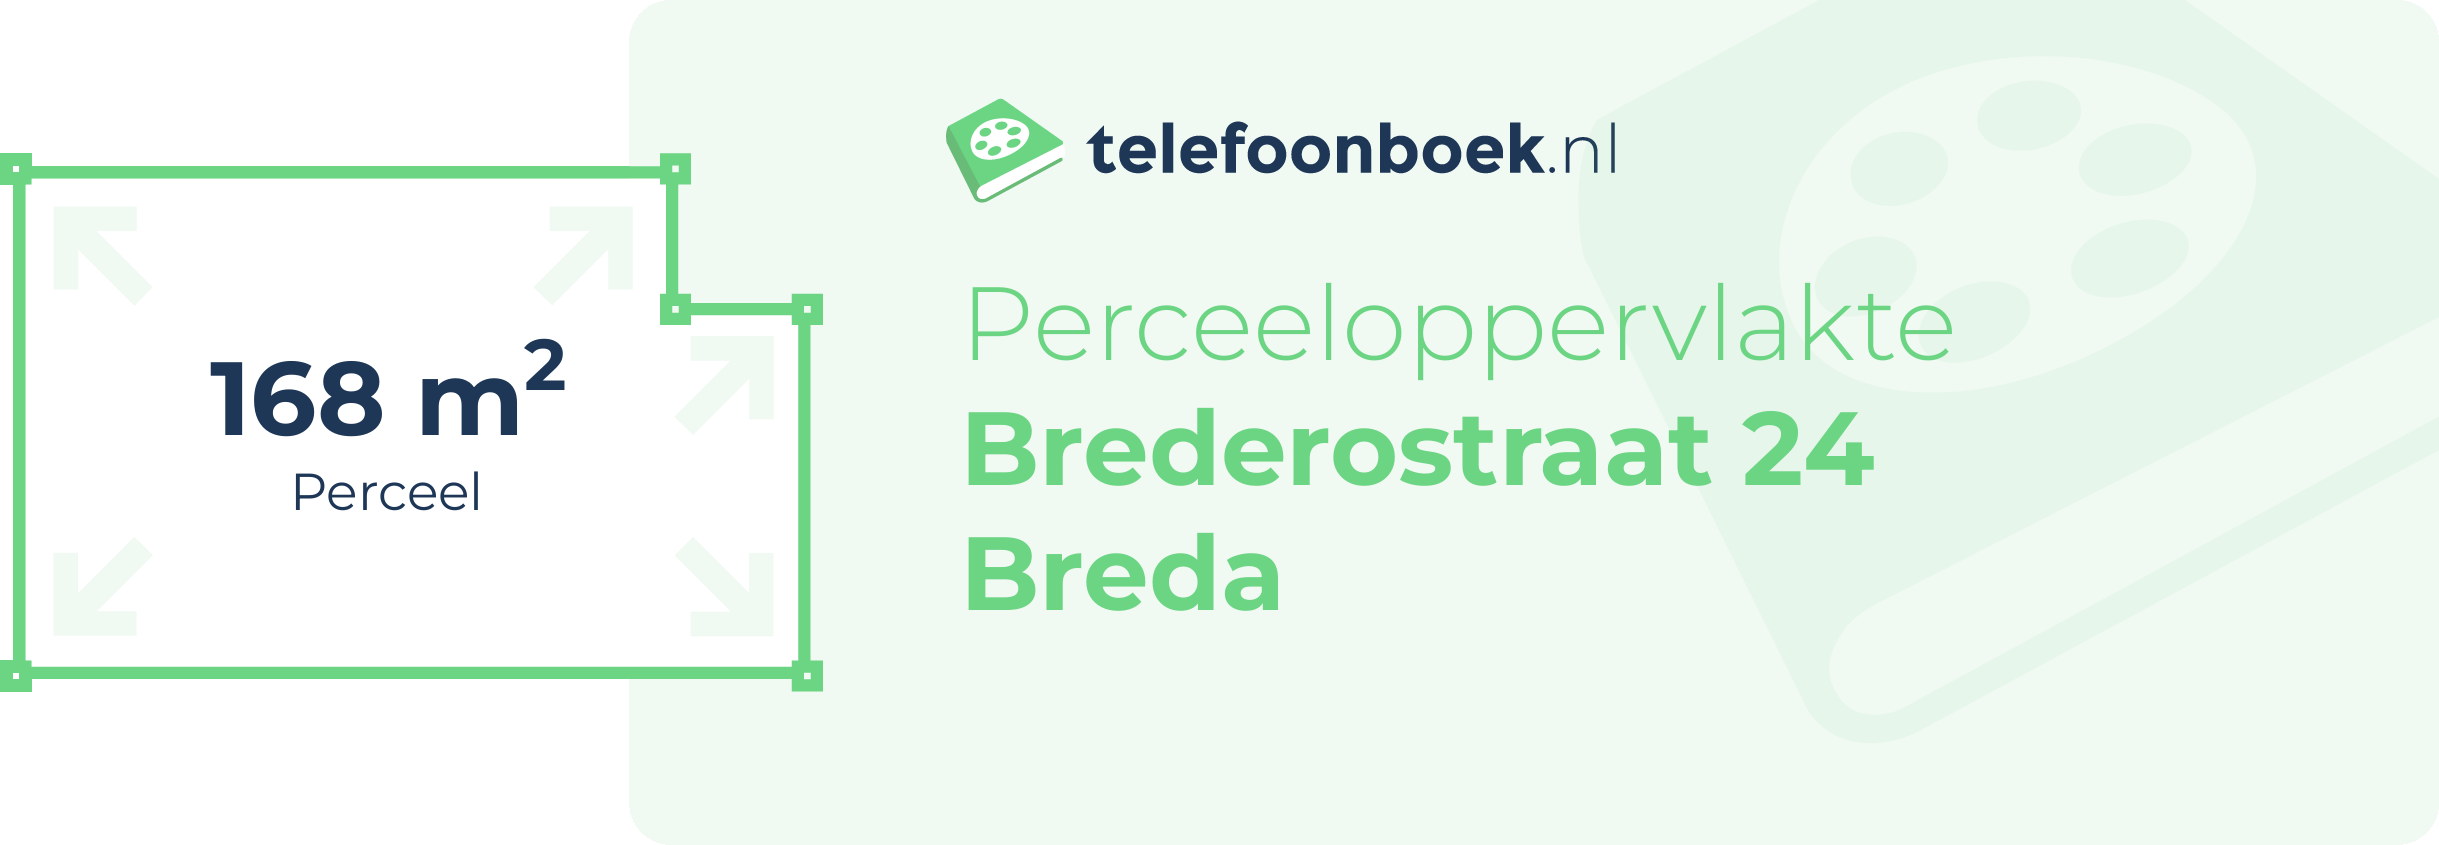 Perceeloppervlakte Brederostraat 24 Breda